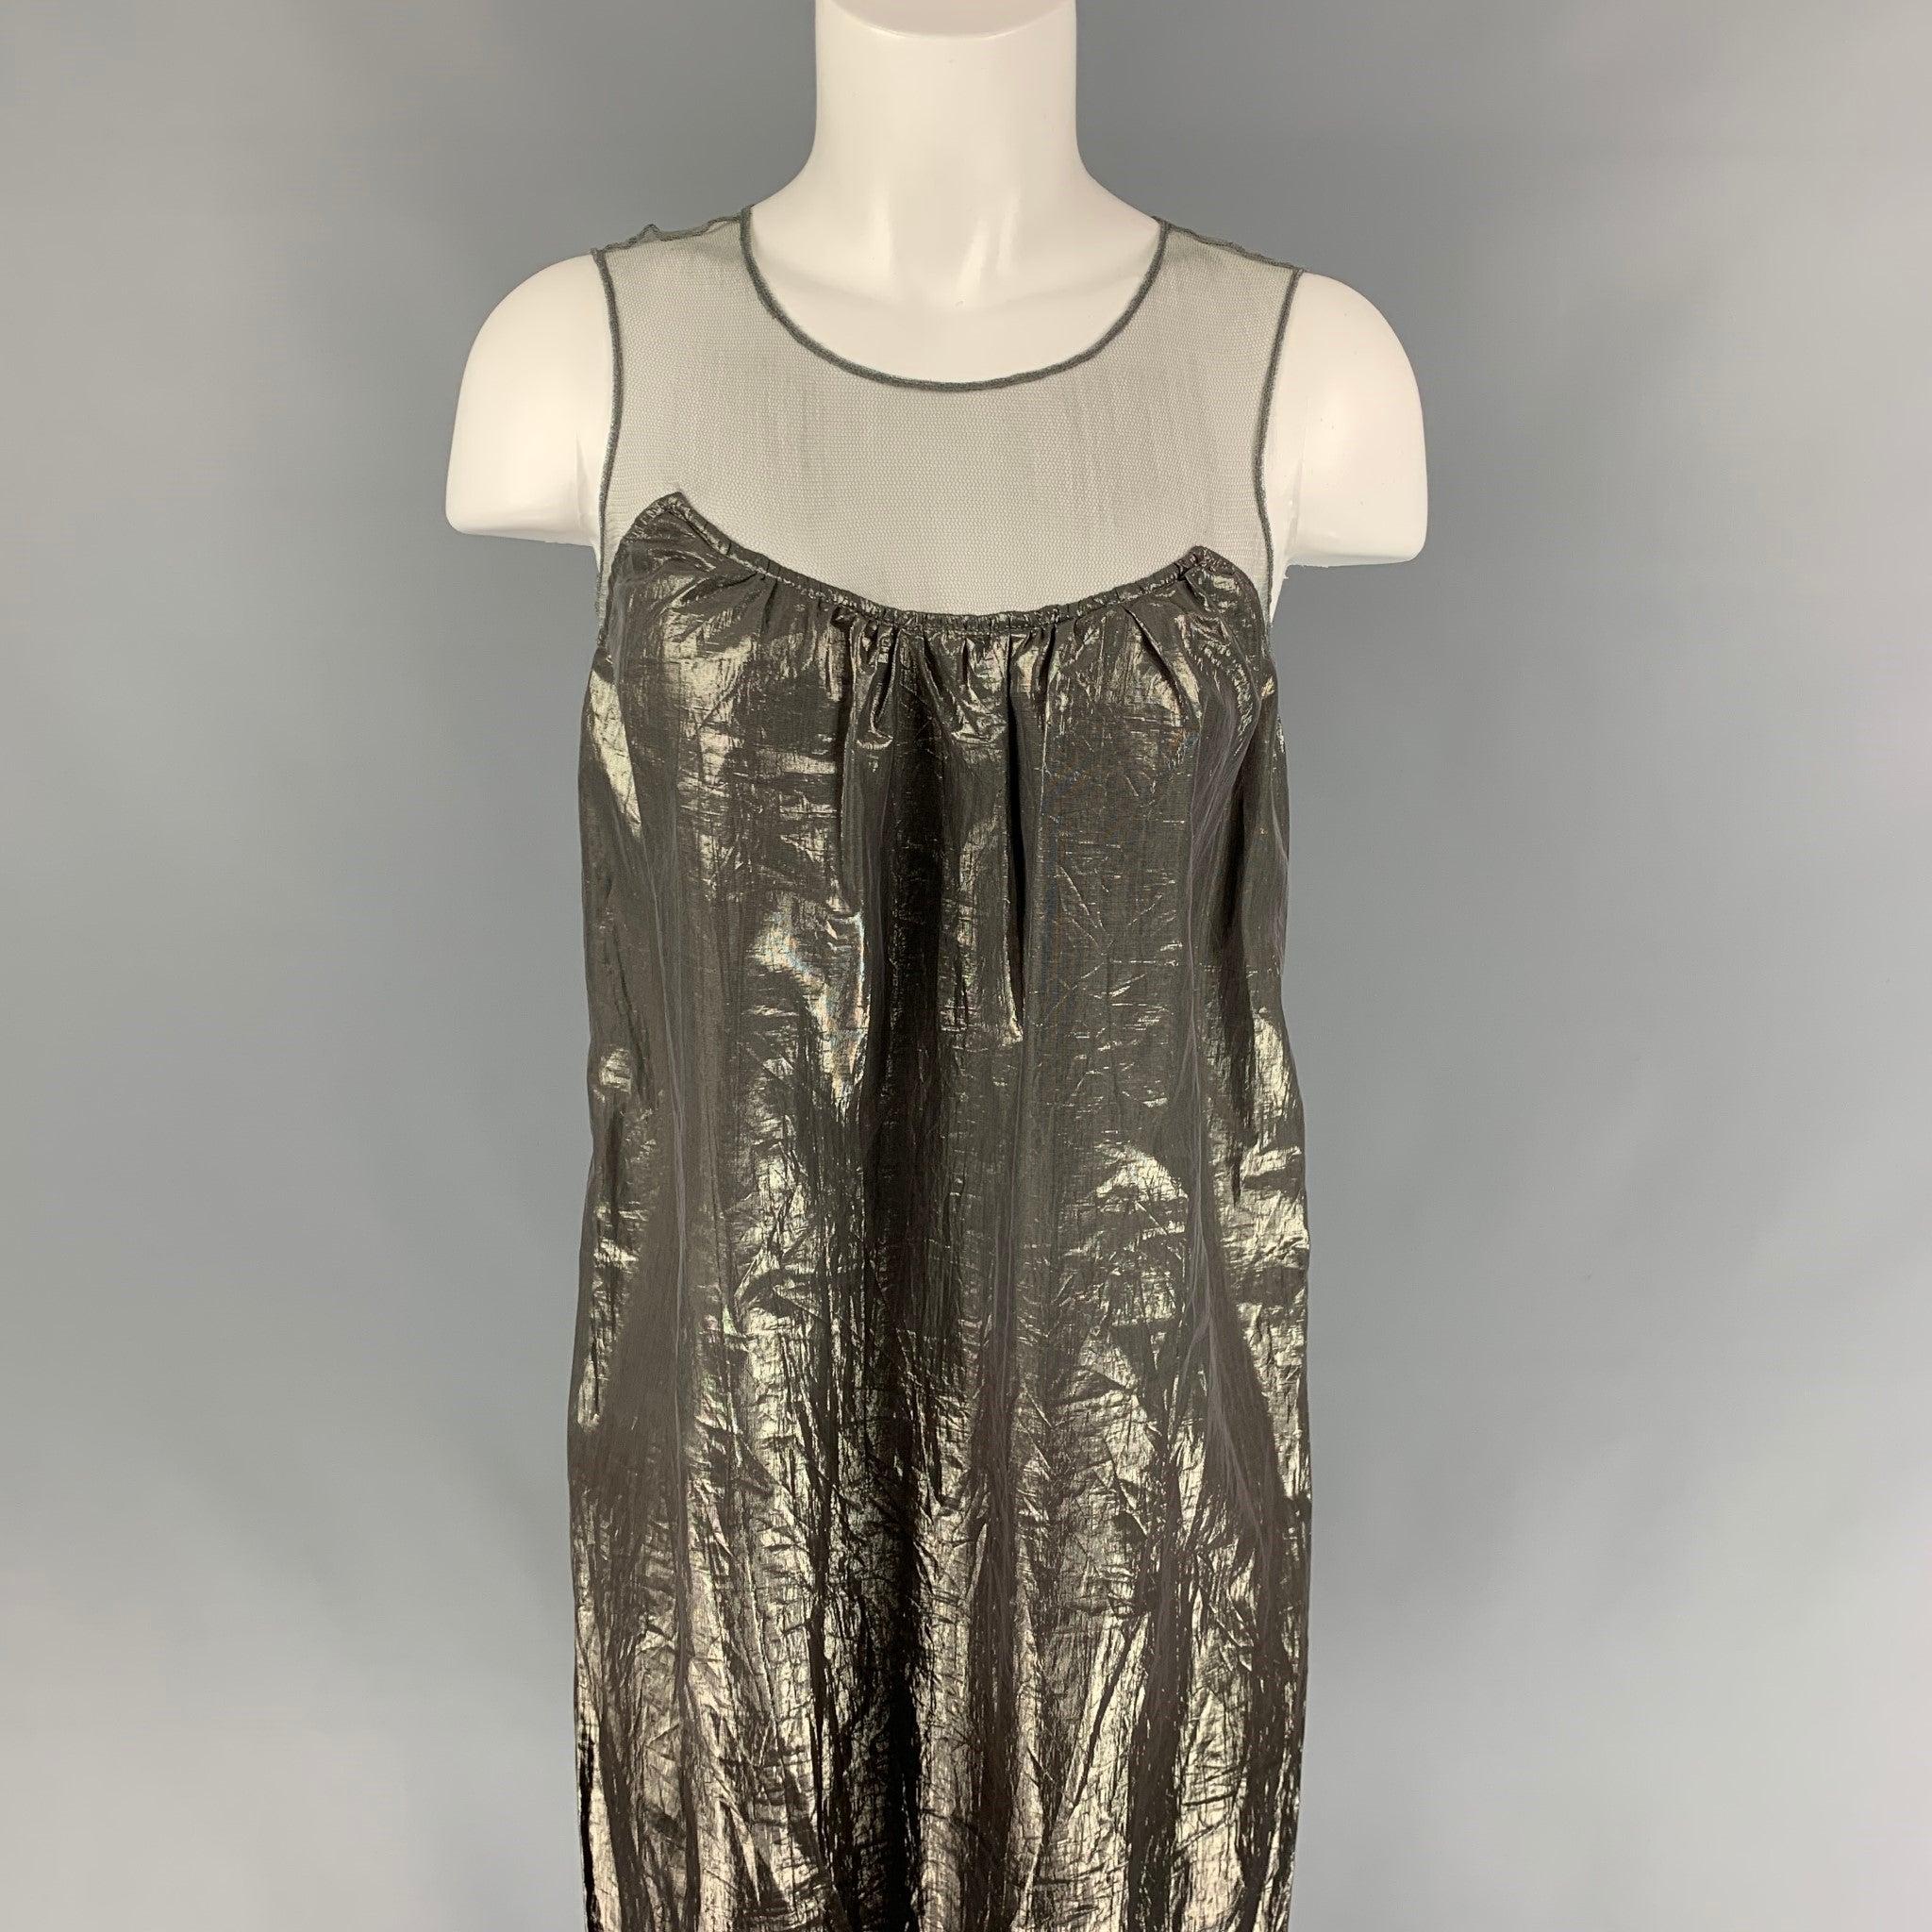 La robe PRORSUM de Burberry est réalisée en soie mélangée de couleur bronze et présente un style décentré, un empiècement en maille, un bouton unique et une fermeture zippée au dos. Fabriquées en Italie.
Très bien
Etat d'occasion. 

Marqué :   40